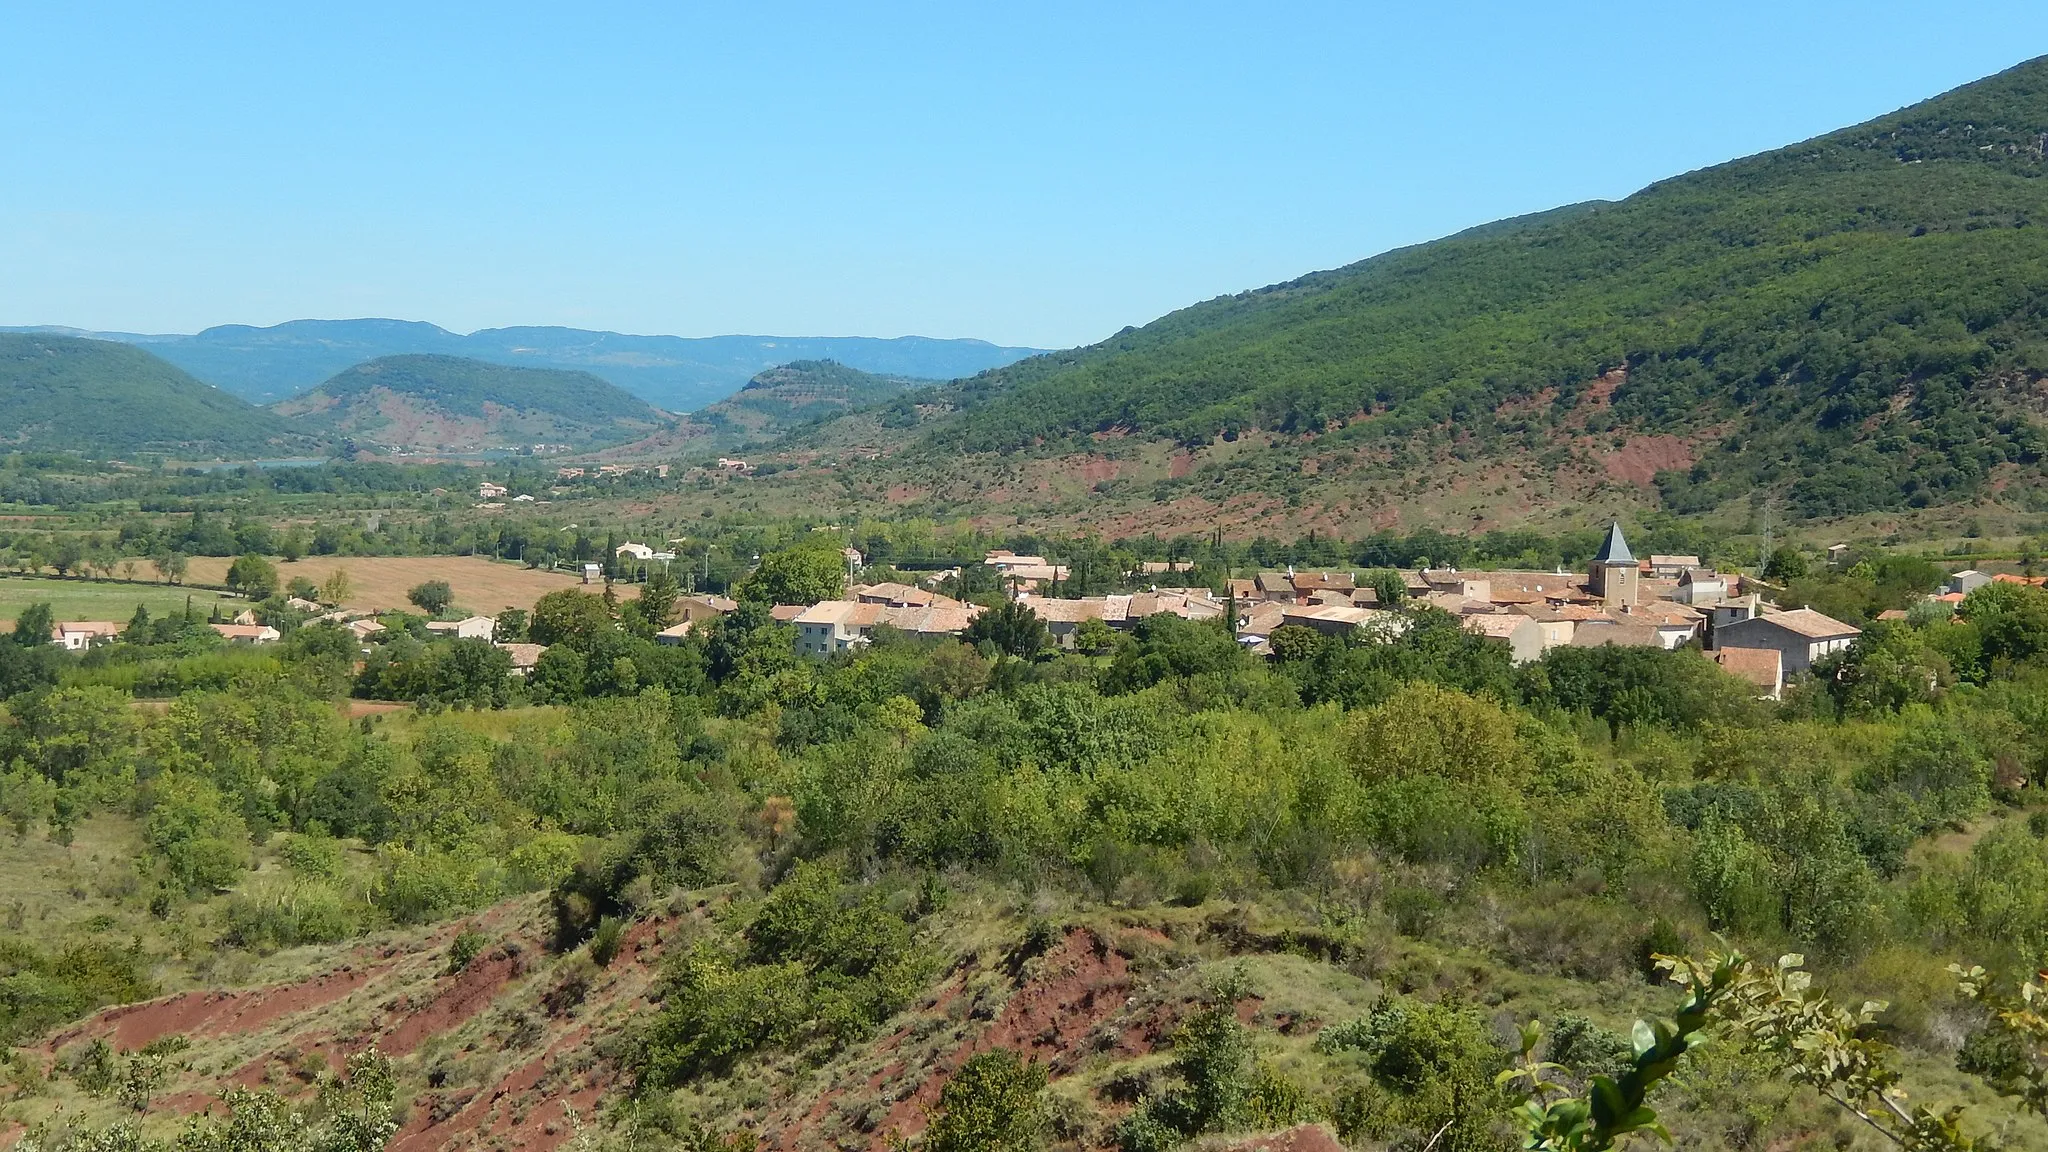 Photo showing: Le village de Salasc (Hérault, France) vu depuis le sentier des béals, qui traverse des hauteurs situées au sud-ouest. Au premier plan, des ruffes, caractéristiques des sols de la région. Au fond, on aperçoit le lac du Salagou. (La géolocalisation de cette image est approximative.)